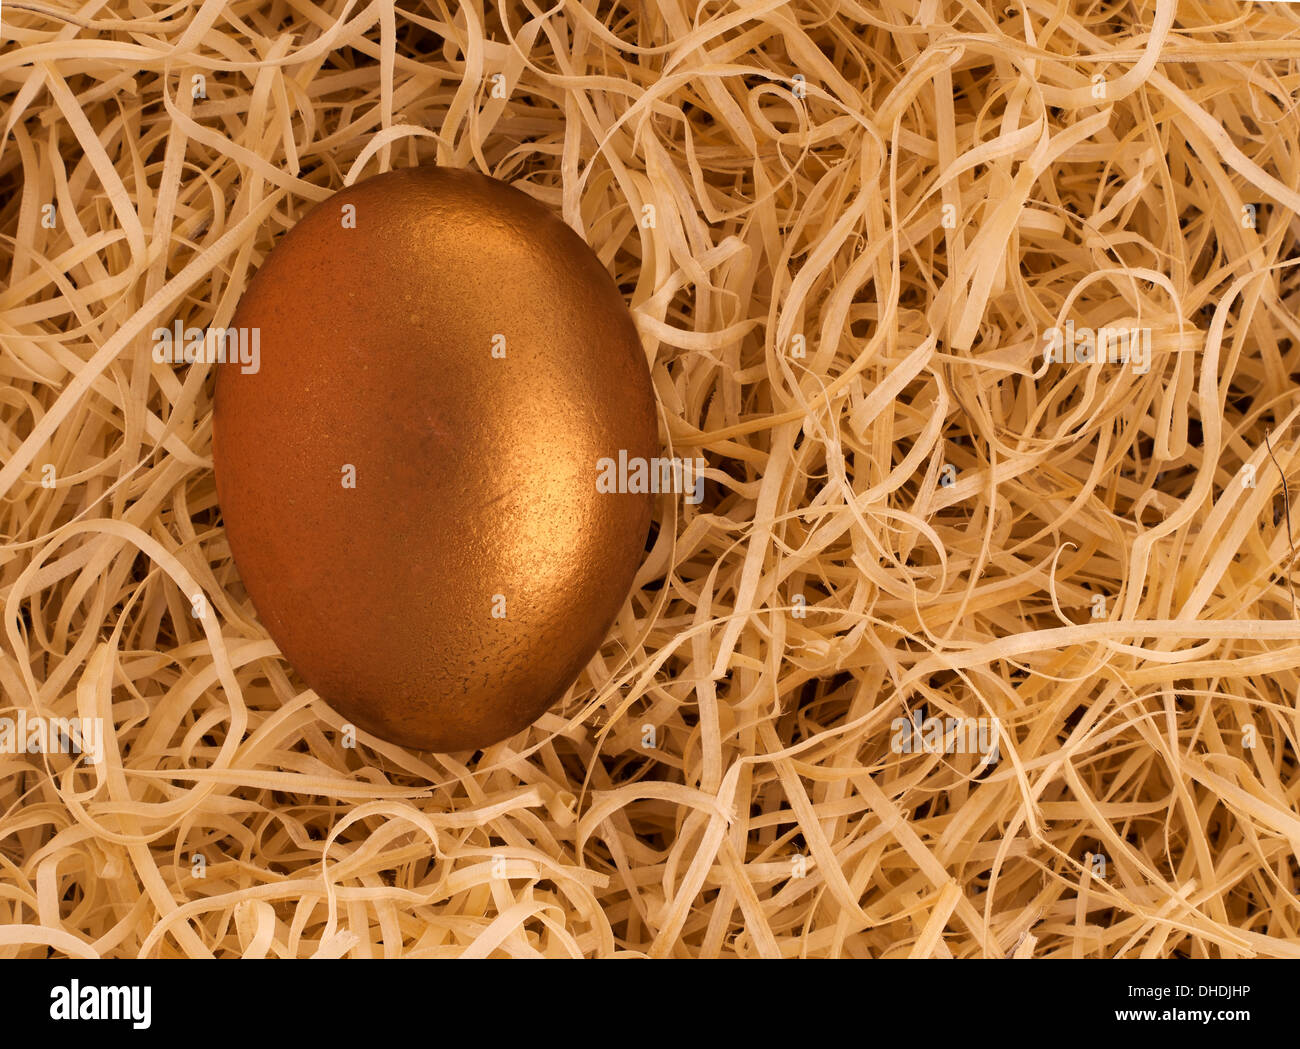 Real nest egg! Stock Photo